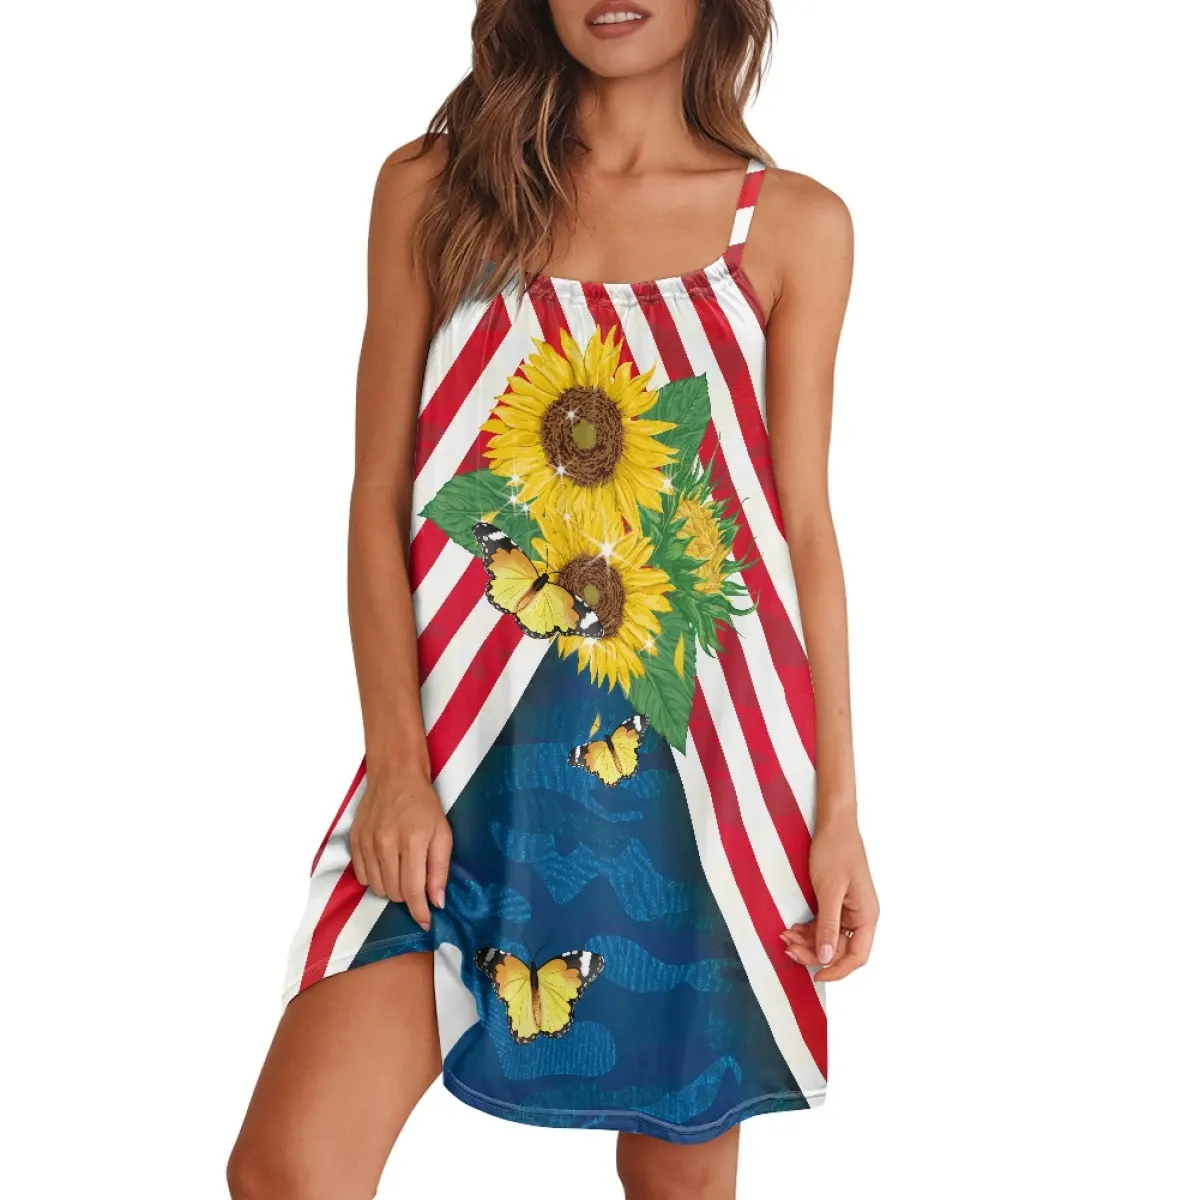 Personalizado Bandera Americana Personalización Diseñado Slip Dress Venta Directa de Fábrica Único Vestido Casual Mujeres Colorido Slip Dress